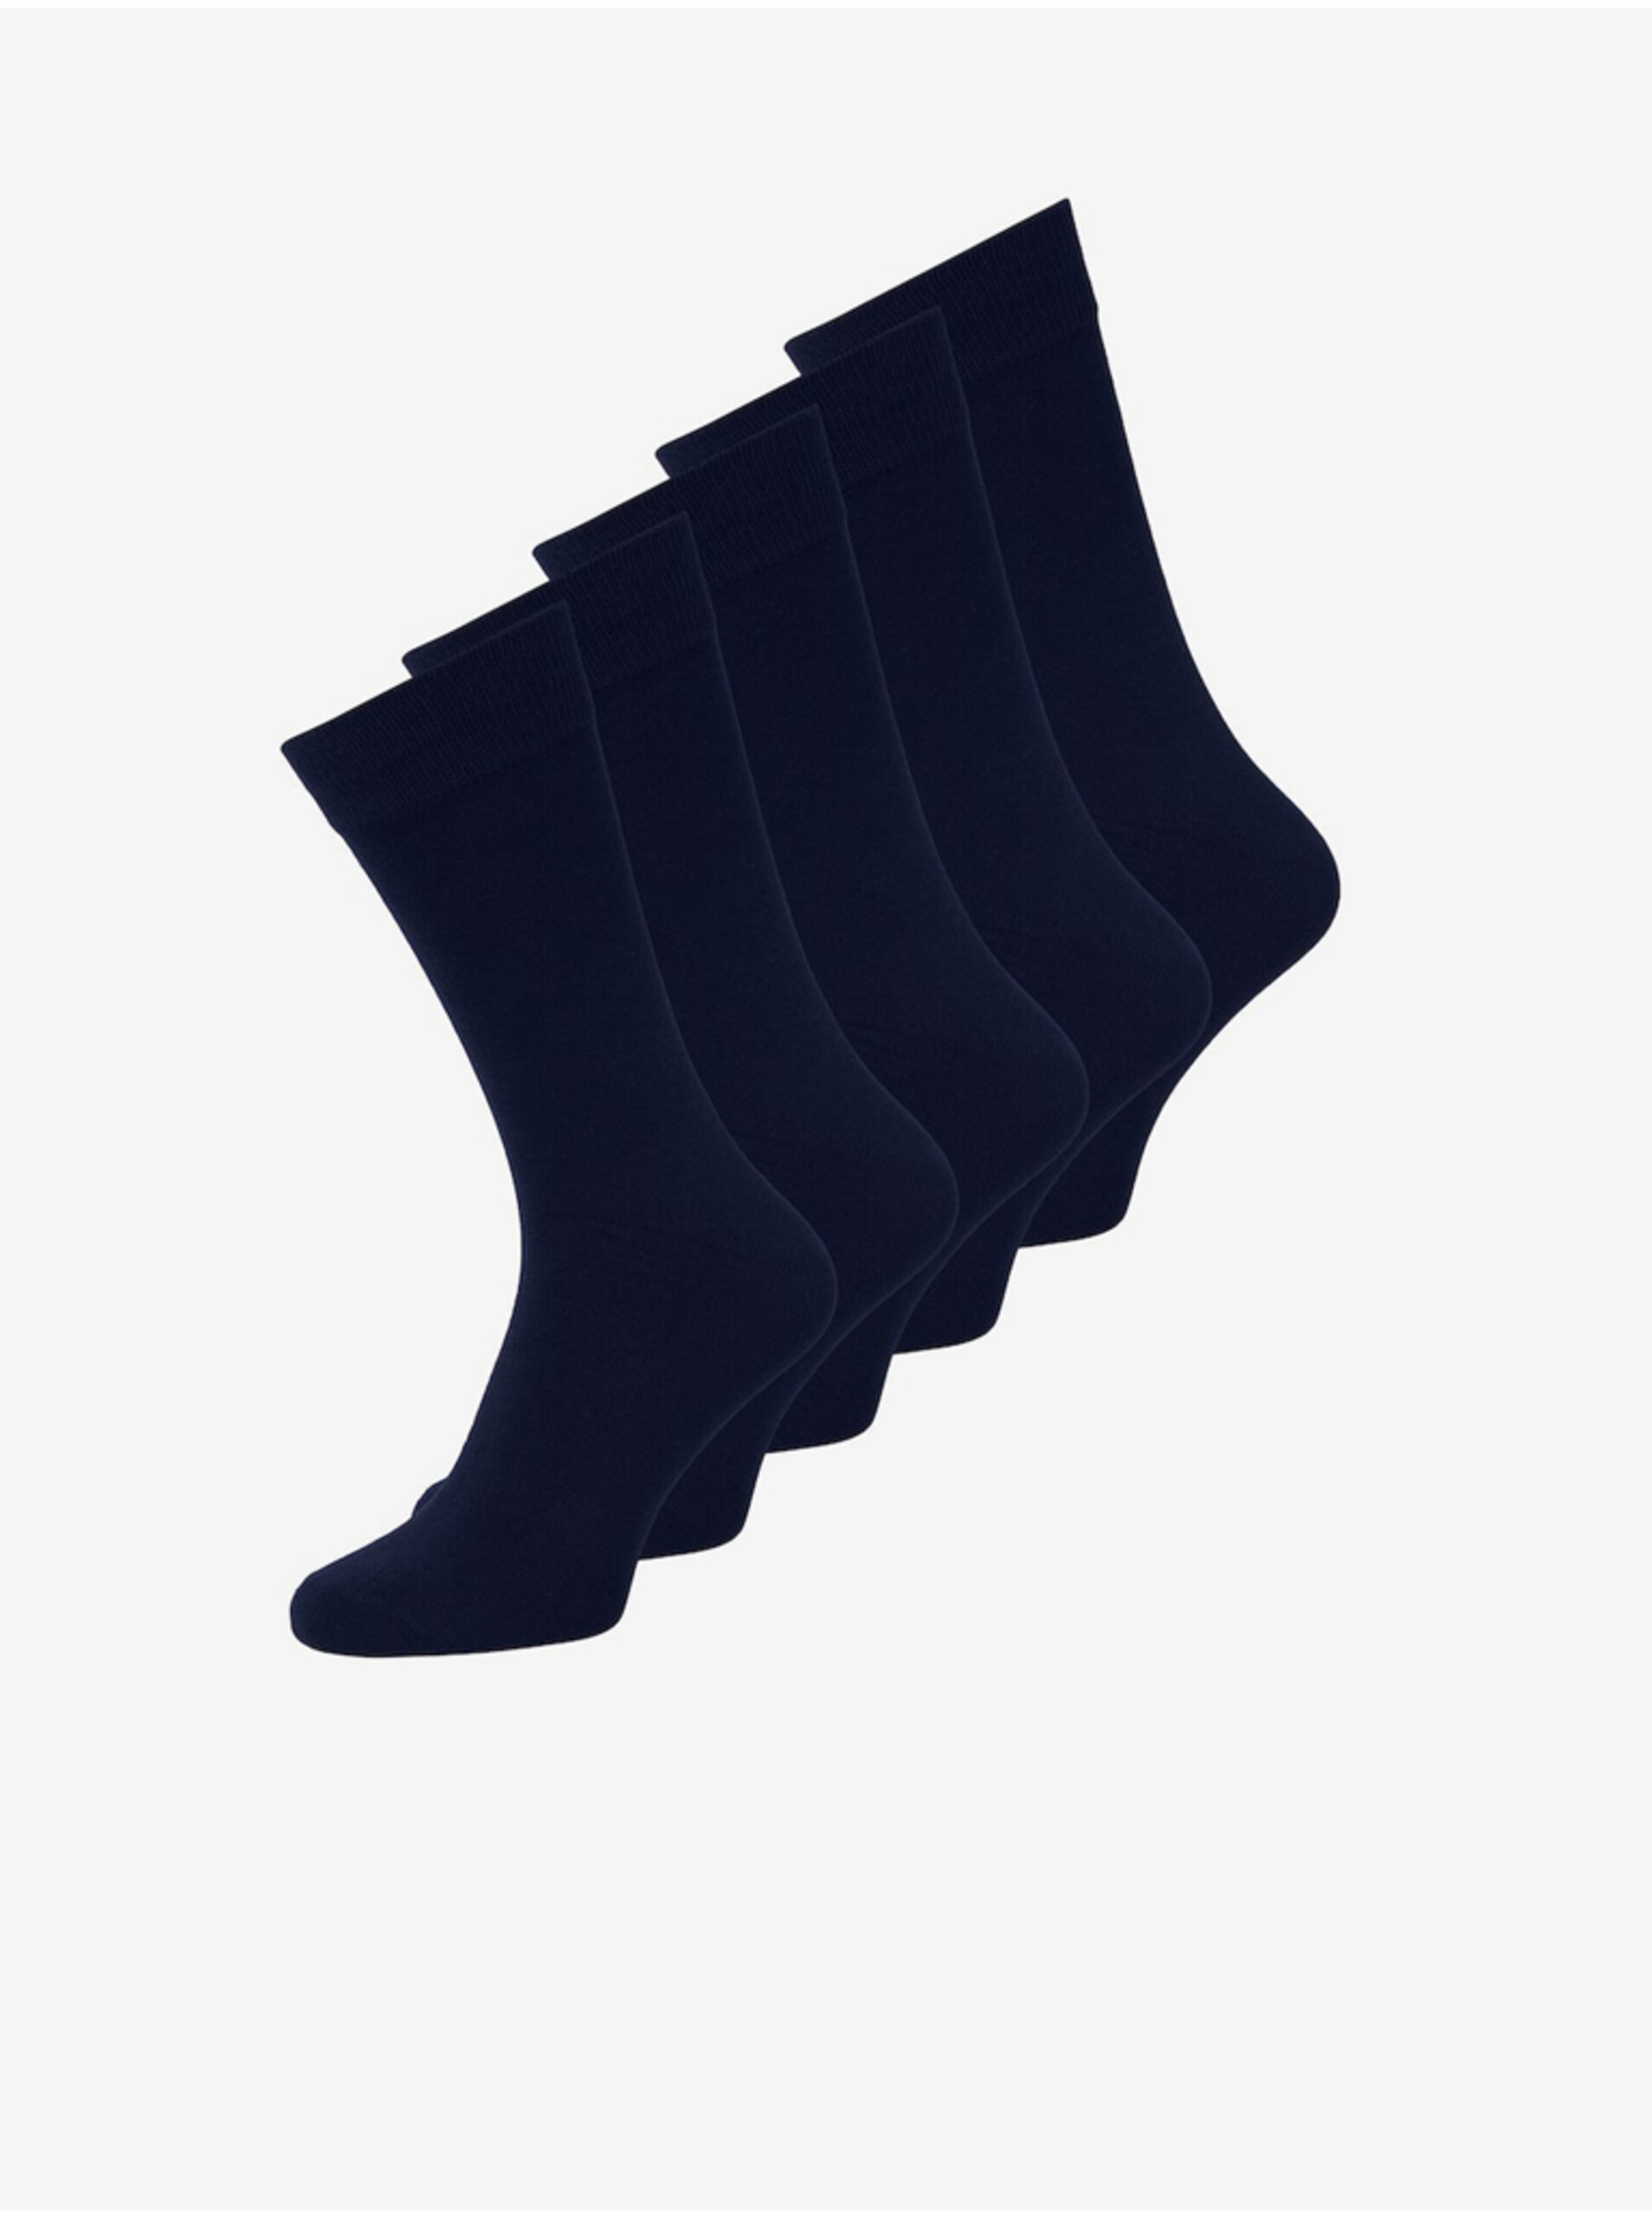 Set of five pairs of men's socks in navy blue Jack & Jones - Men's